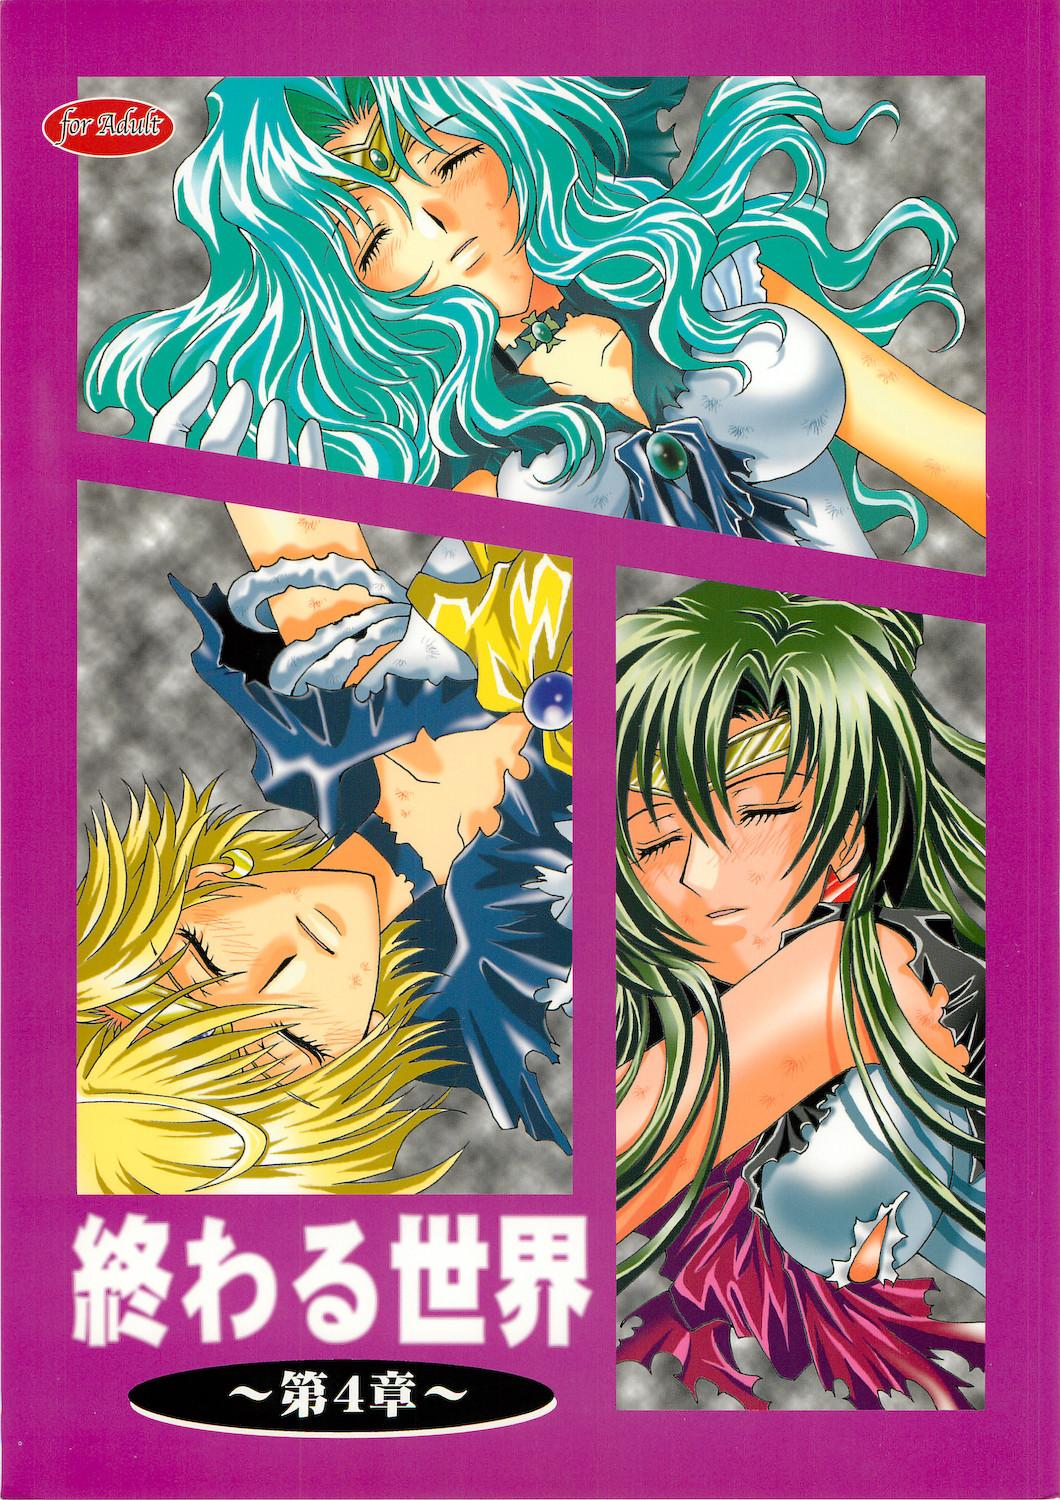 Massive Owaru Sekai dai 4 shou - Sailor moon Workout - Page 1